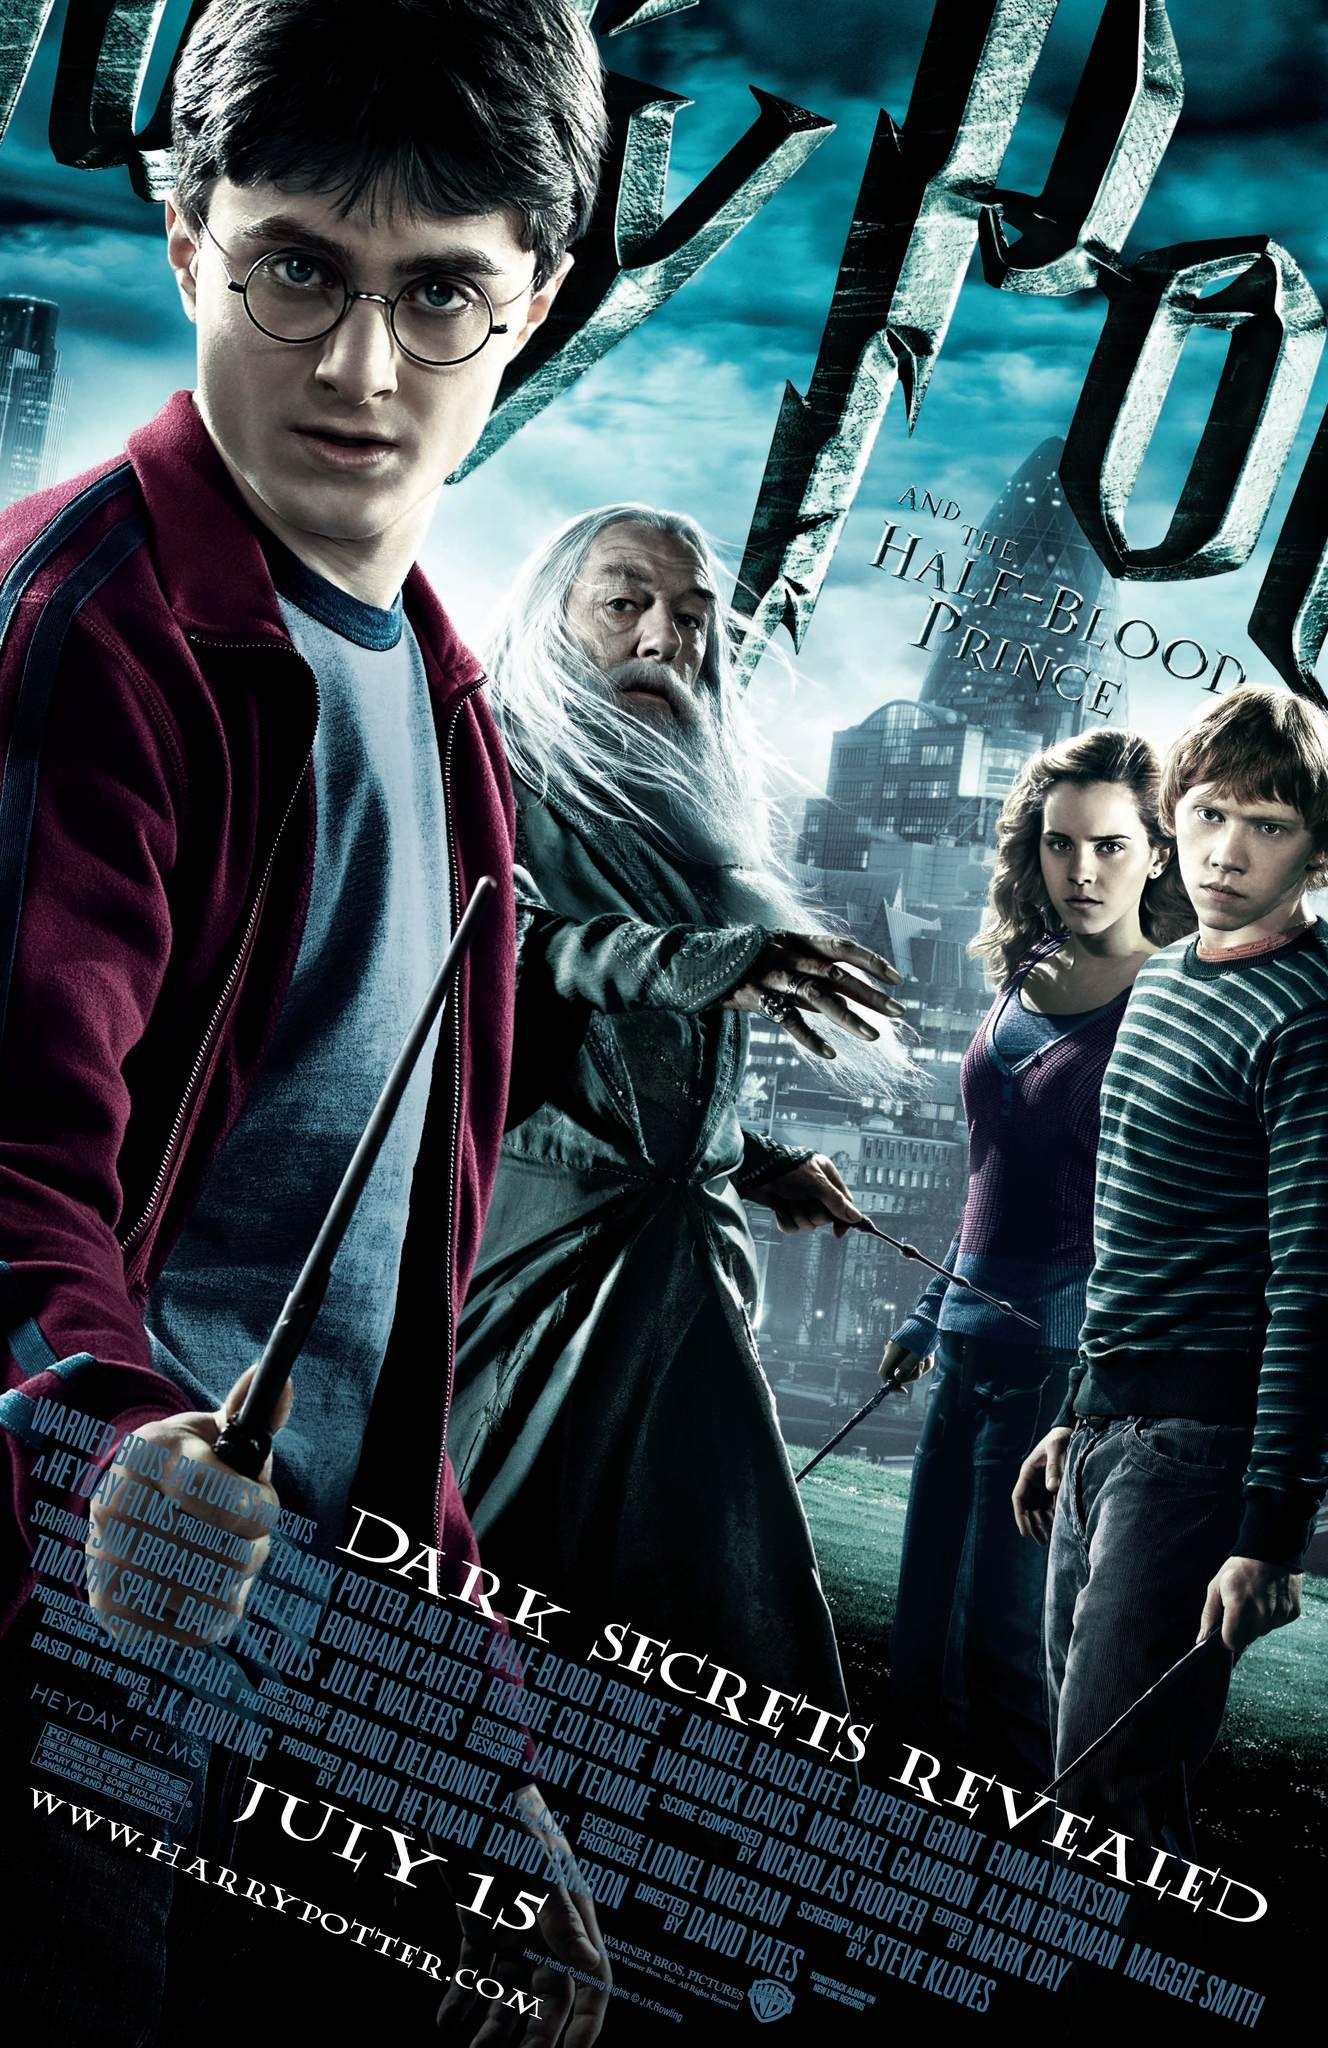 Cartell de la pel·lícula de Harry Potter i el príncep mestí